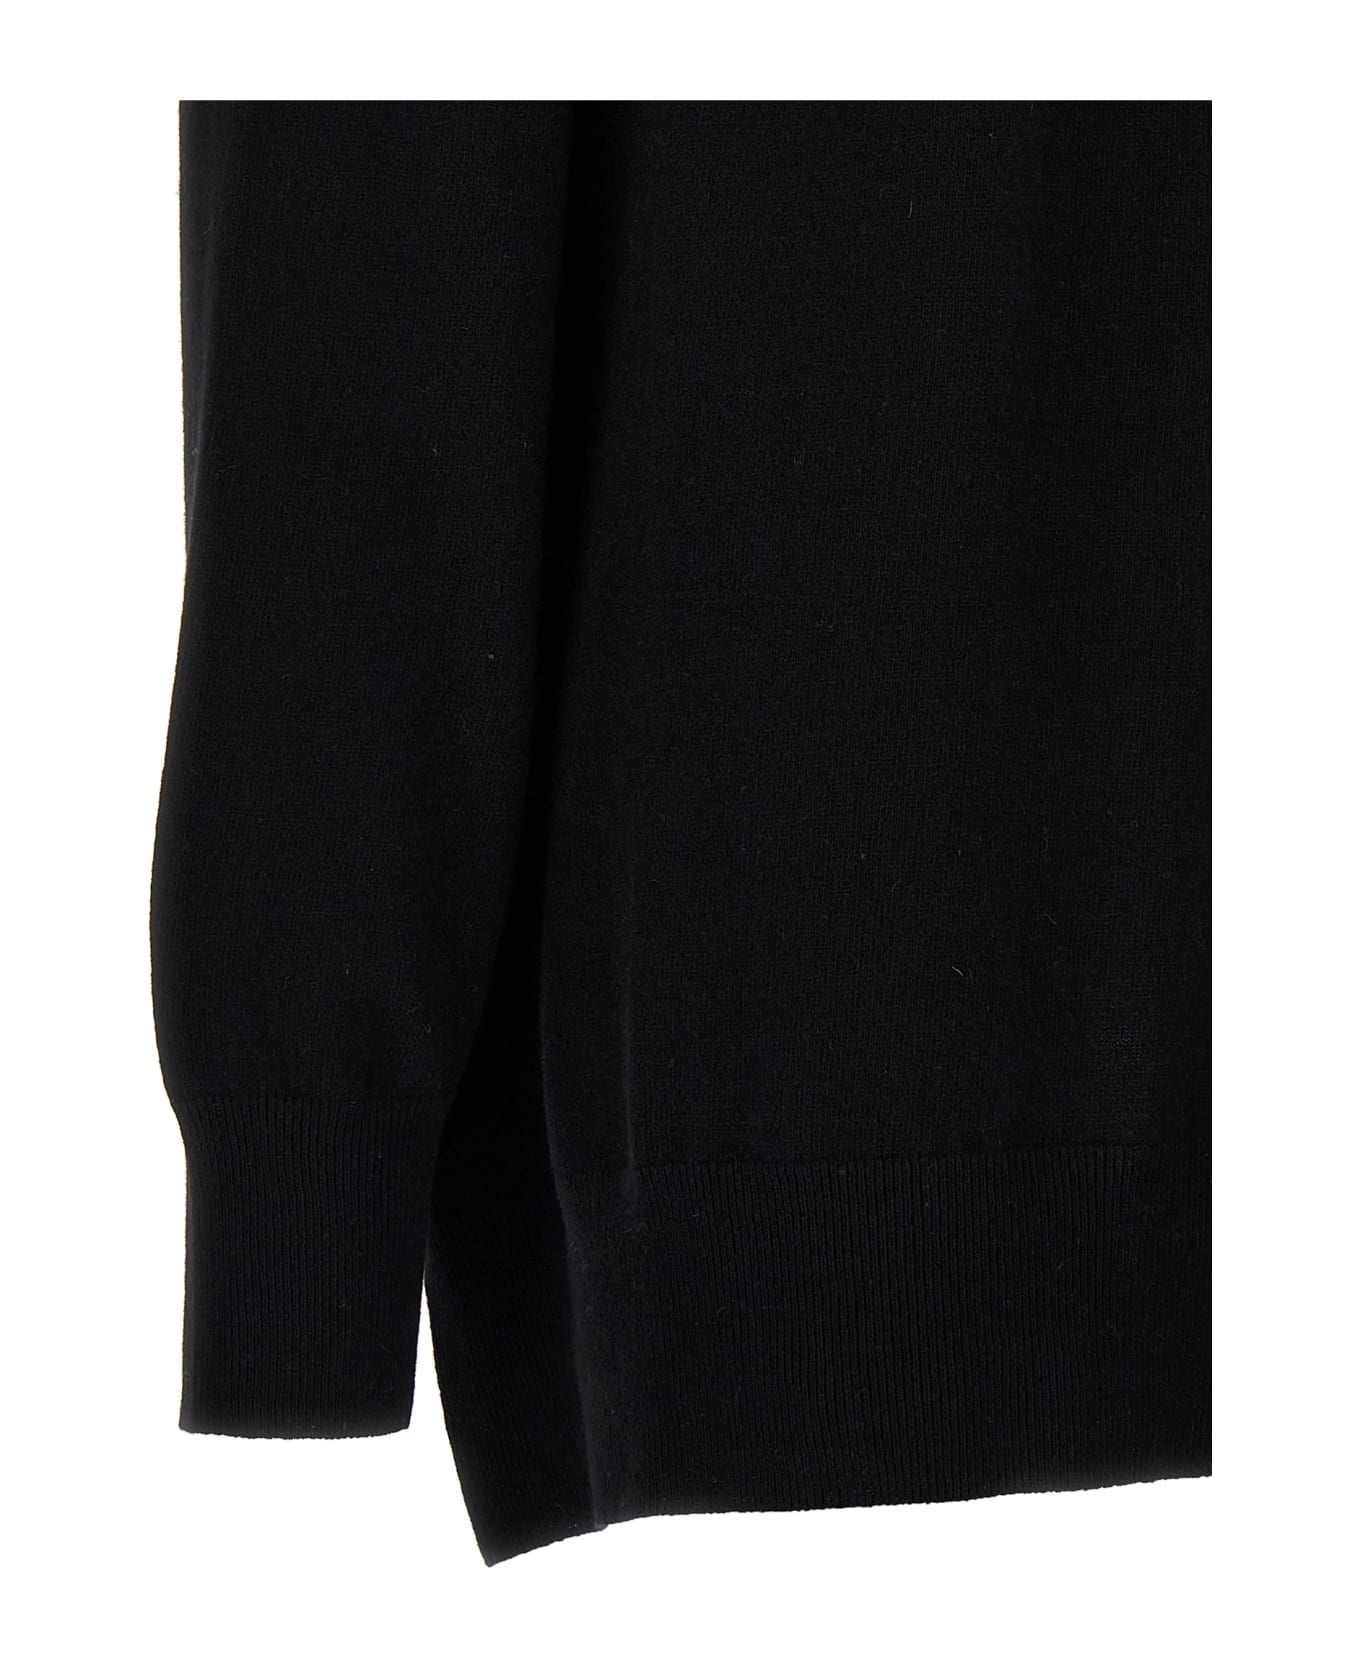 (nude) Oversize Sweater - Black  